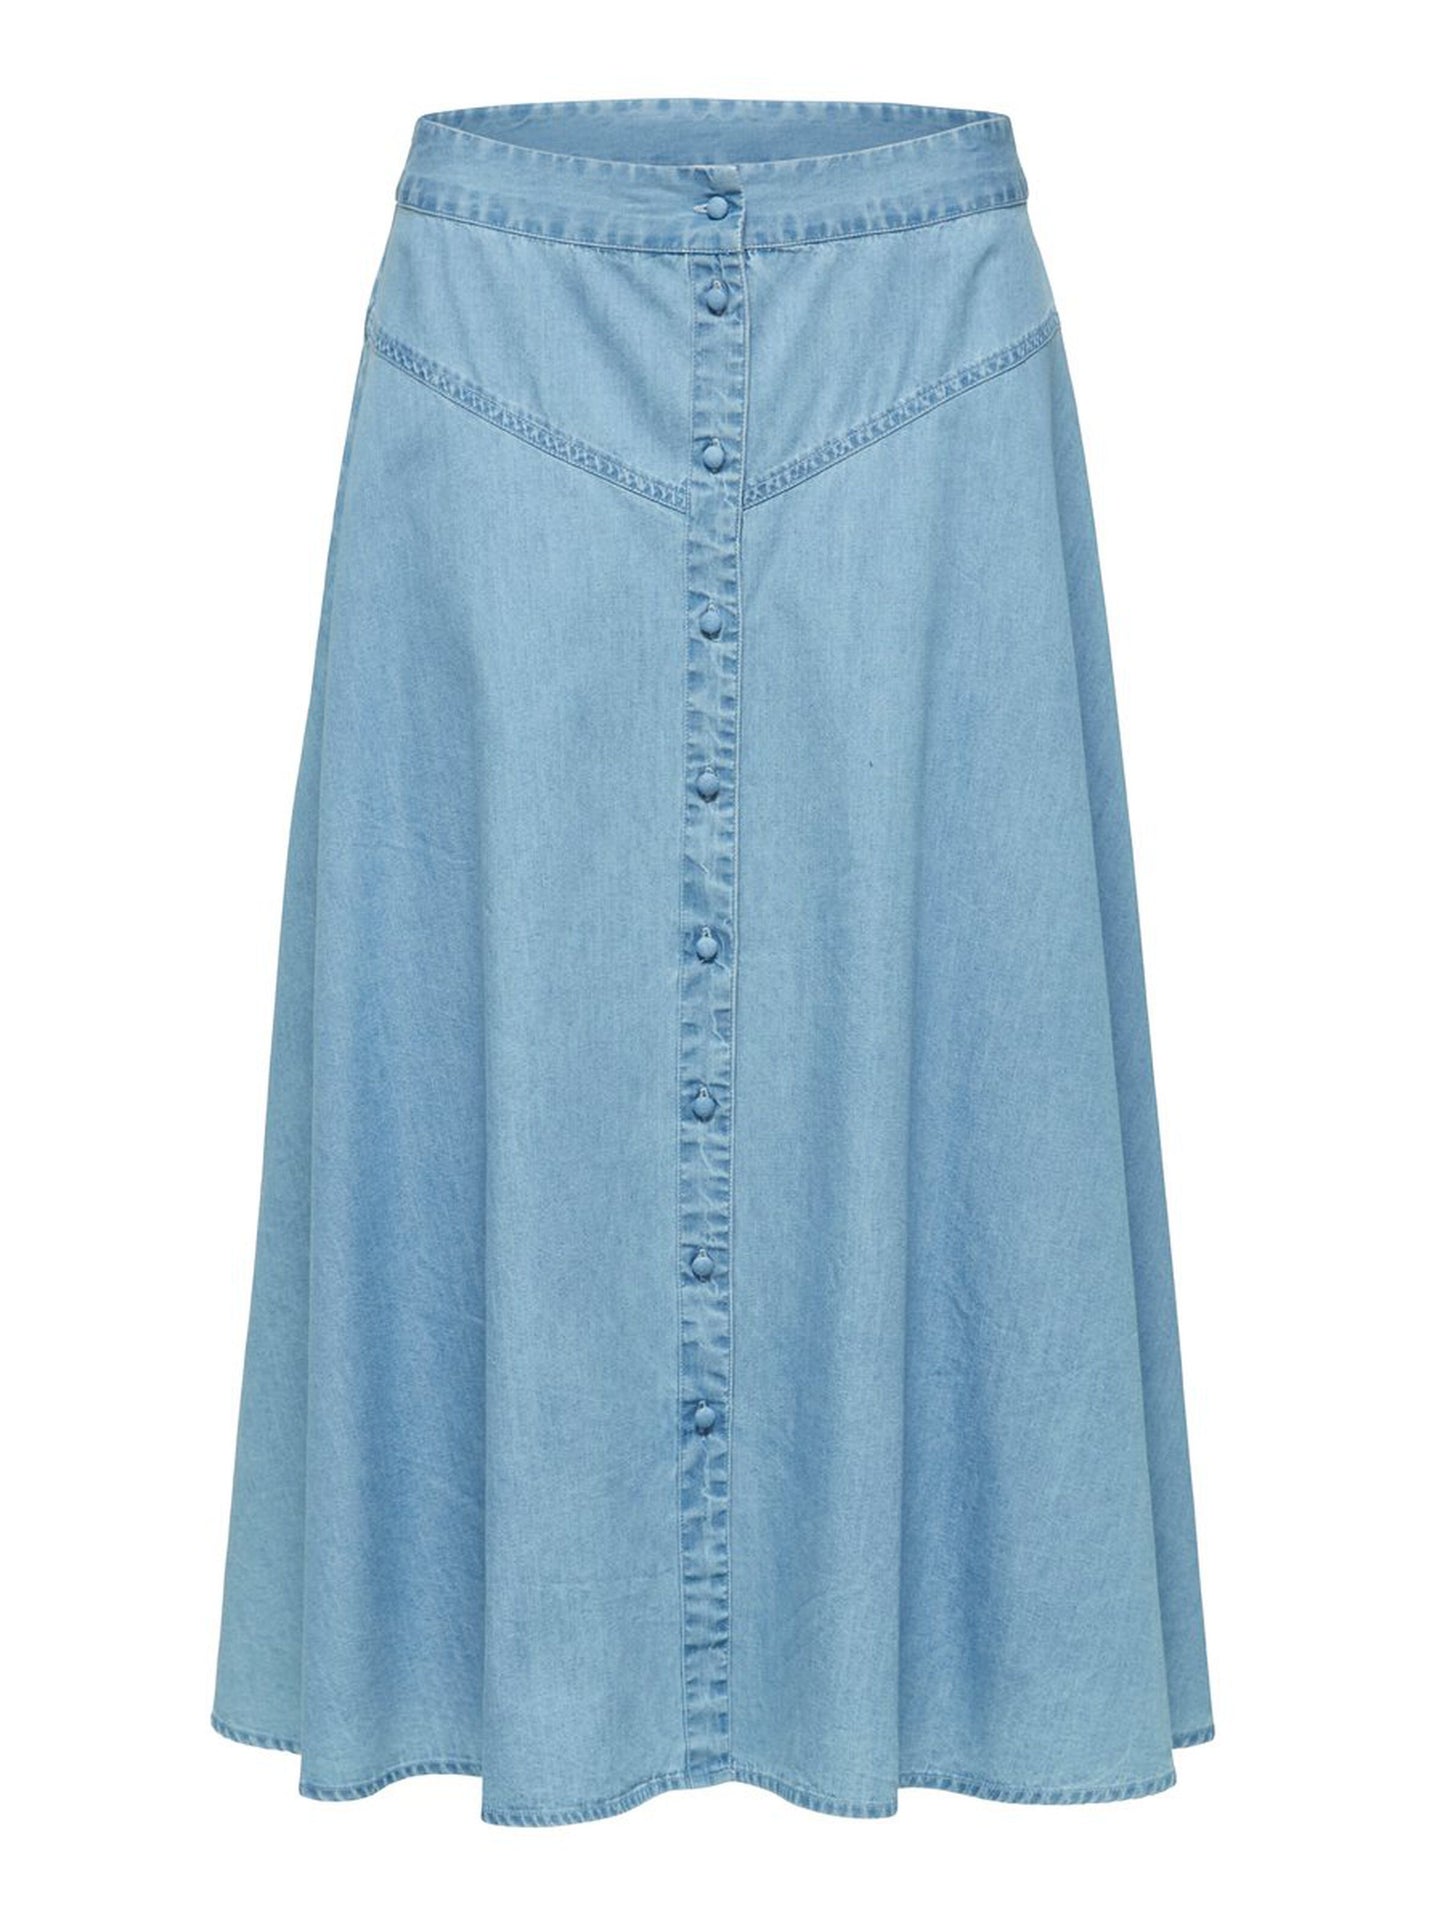 ‘Joy’ Western Inspired midi skirt - light blue